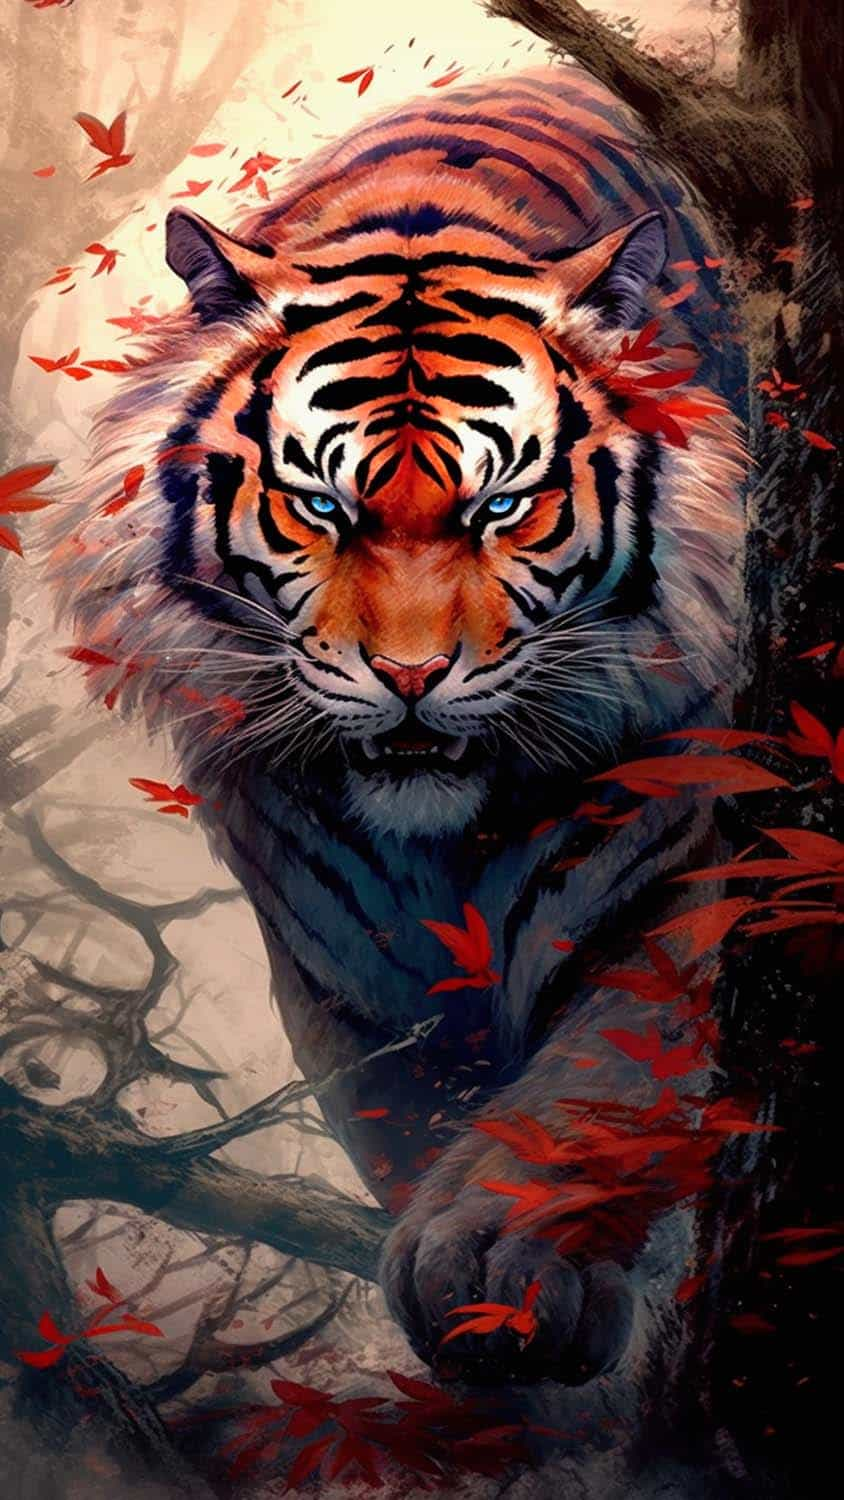 Wild Tiger Art iPhone Wallpaper  iPhone Wallpapers